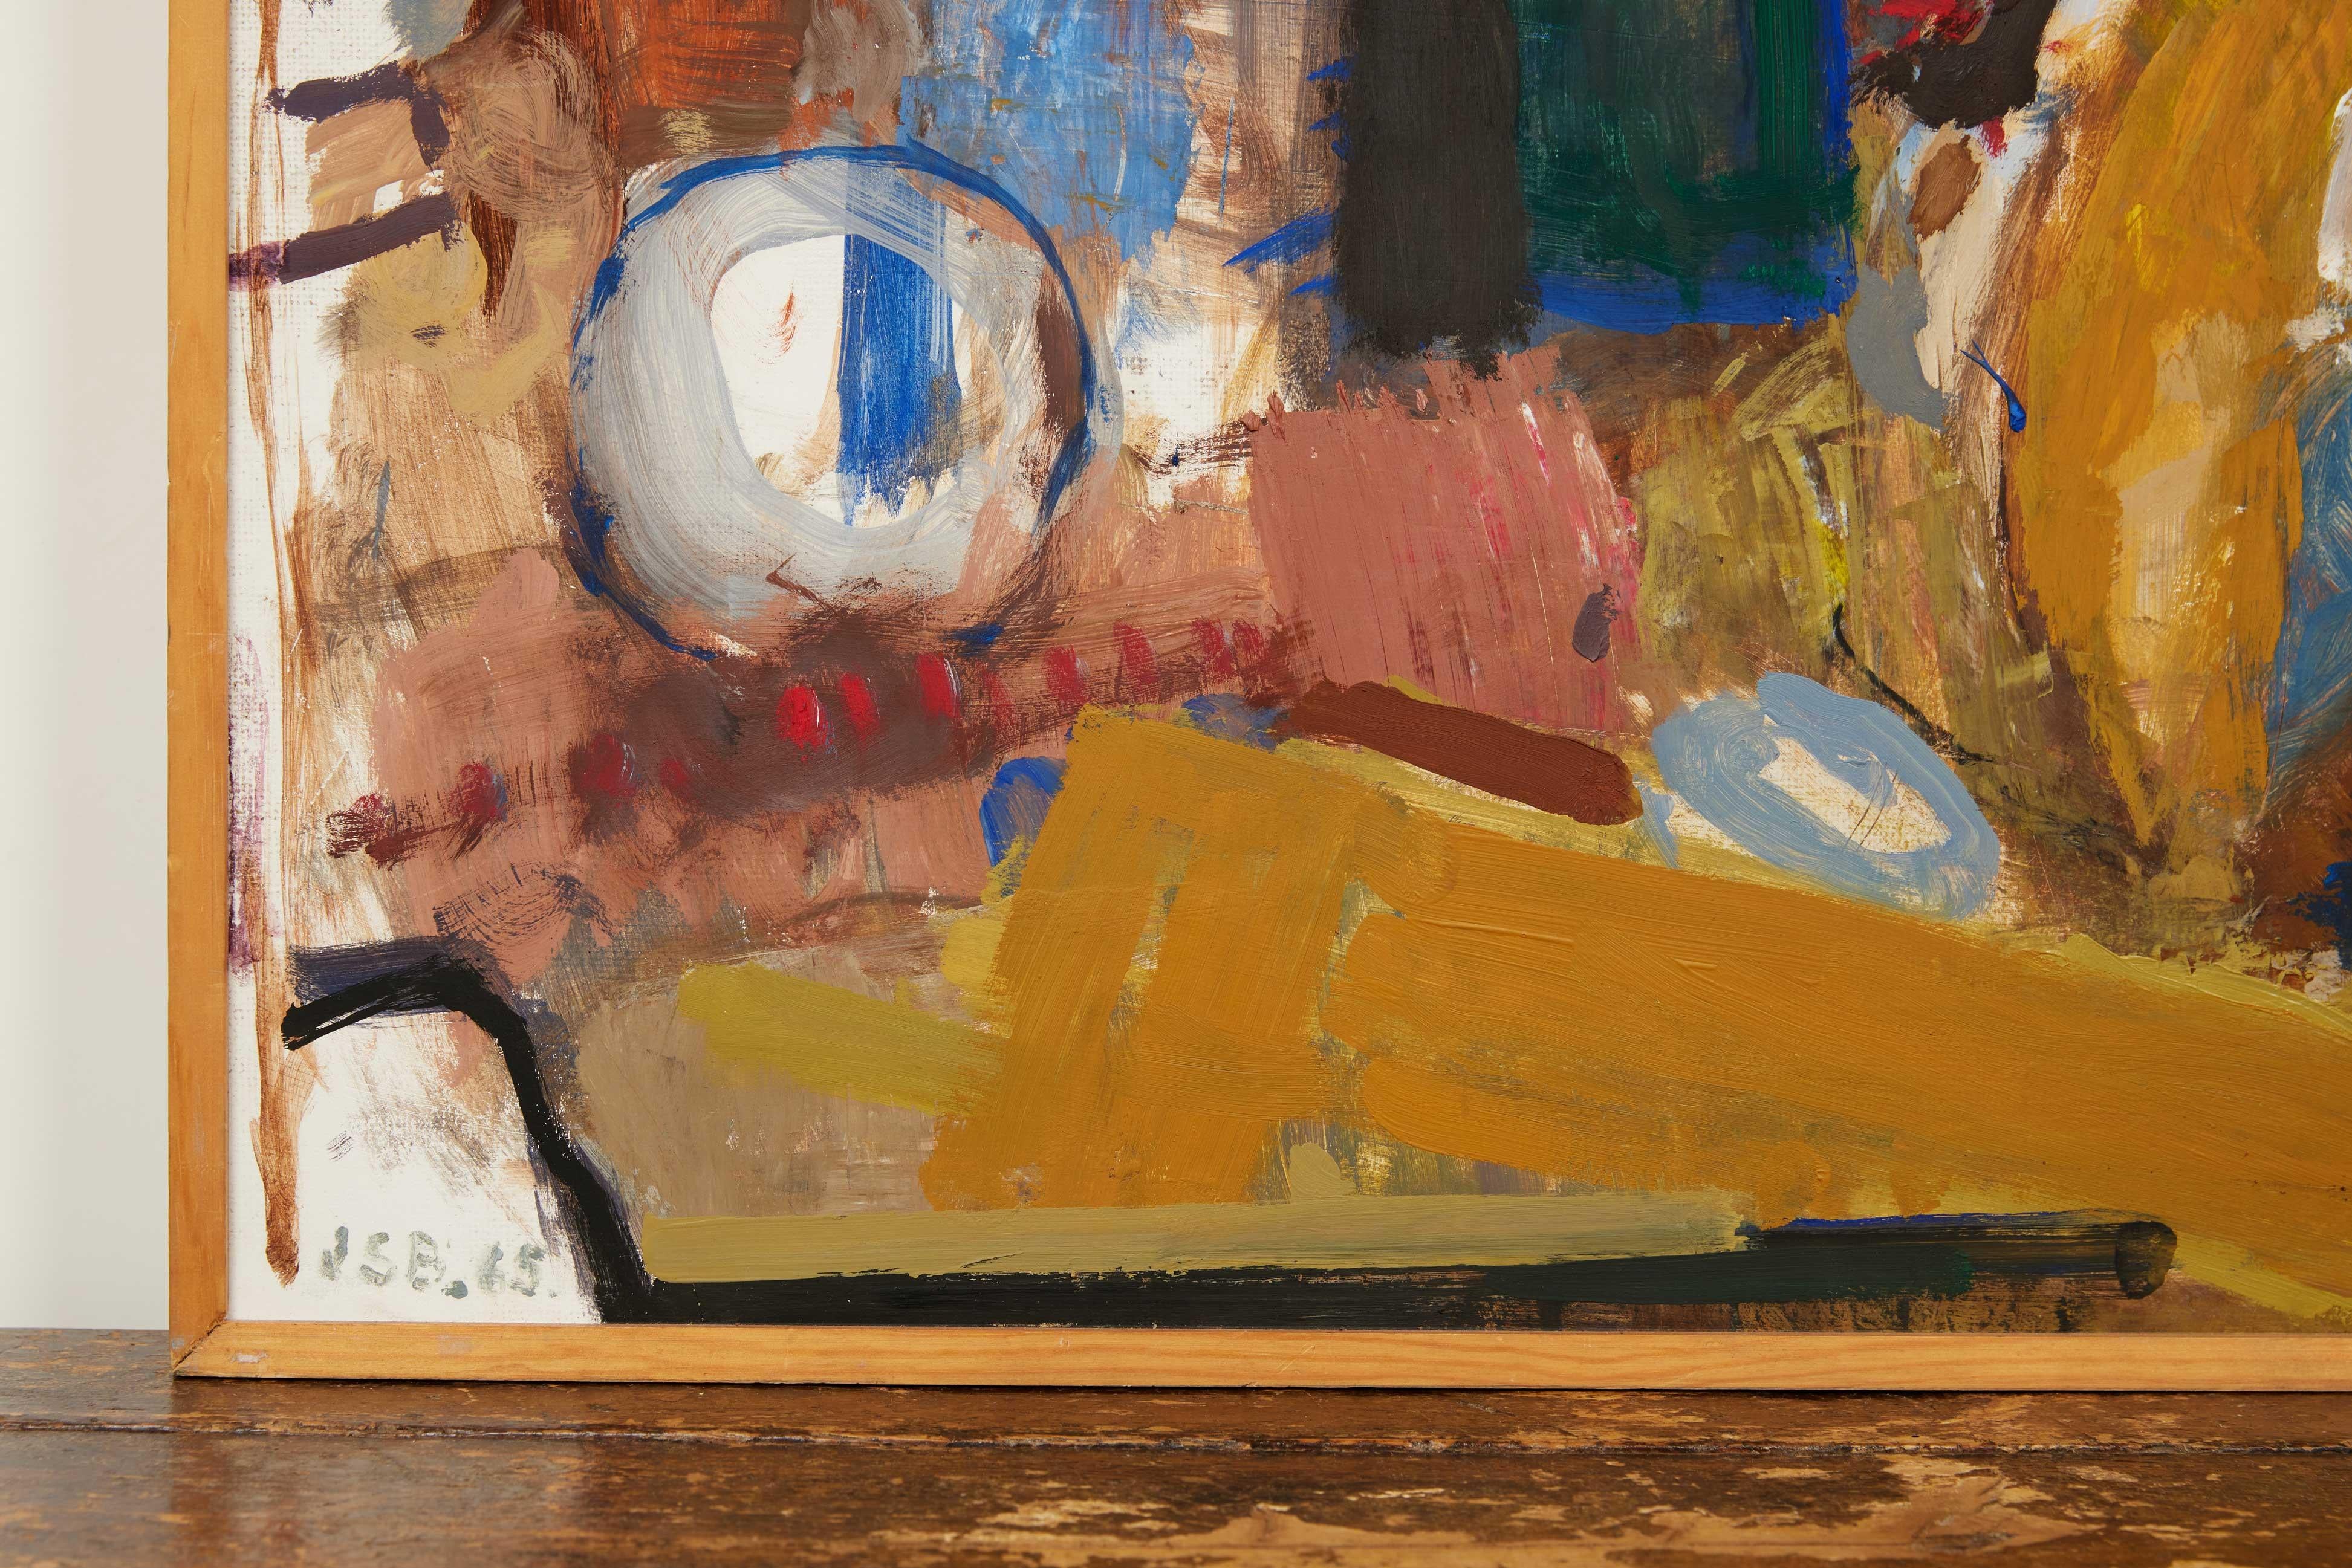 Dänisches abstraktes signiertes Gemälde aus der Mitte des Jahrhunderts - 1965

Tauchen Sie ein in die lebendige Welt der Kunst der Jahrhundertmitte mit diesem beeindruckenden dänischen abstrakten Multicolor-Gemälde aus dem Jahr 1965. Mit Abmessungen